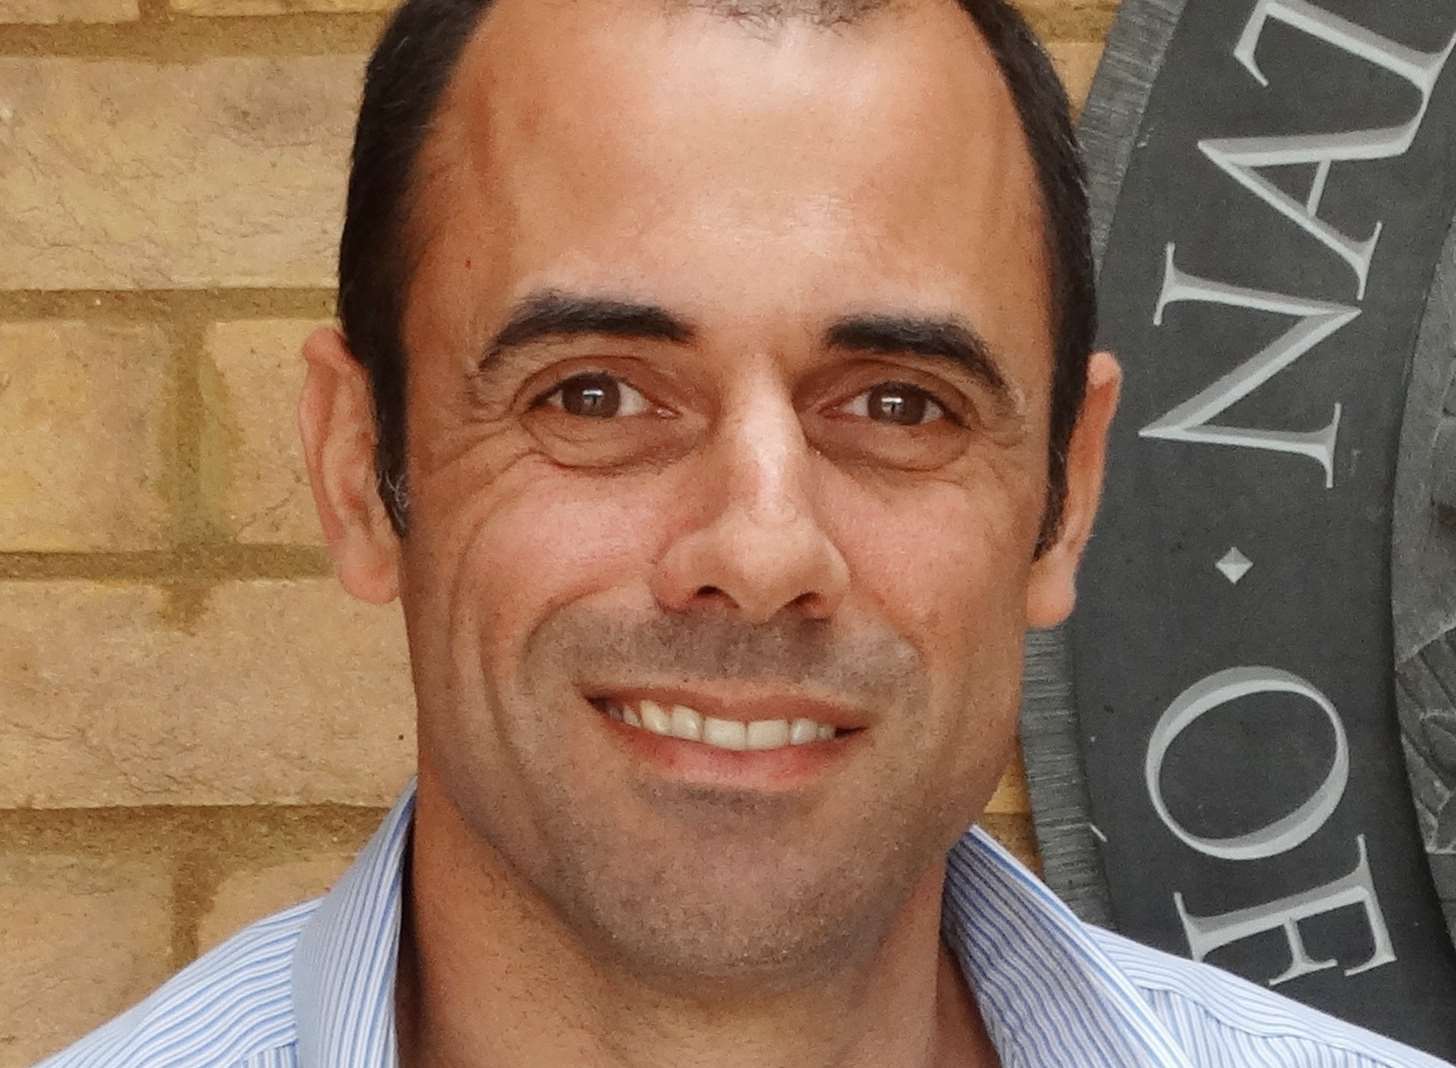 NIAB EMR managing director Professor Mario Caccamo